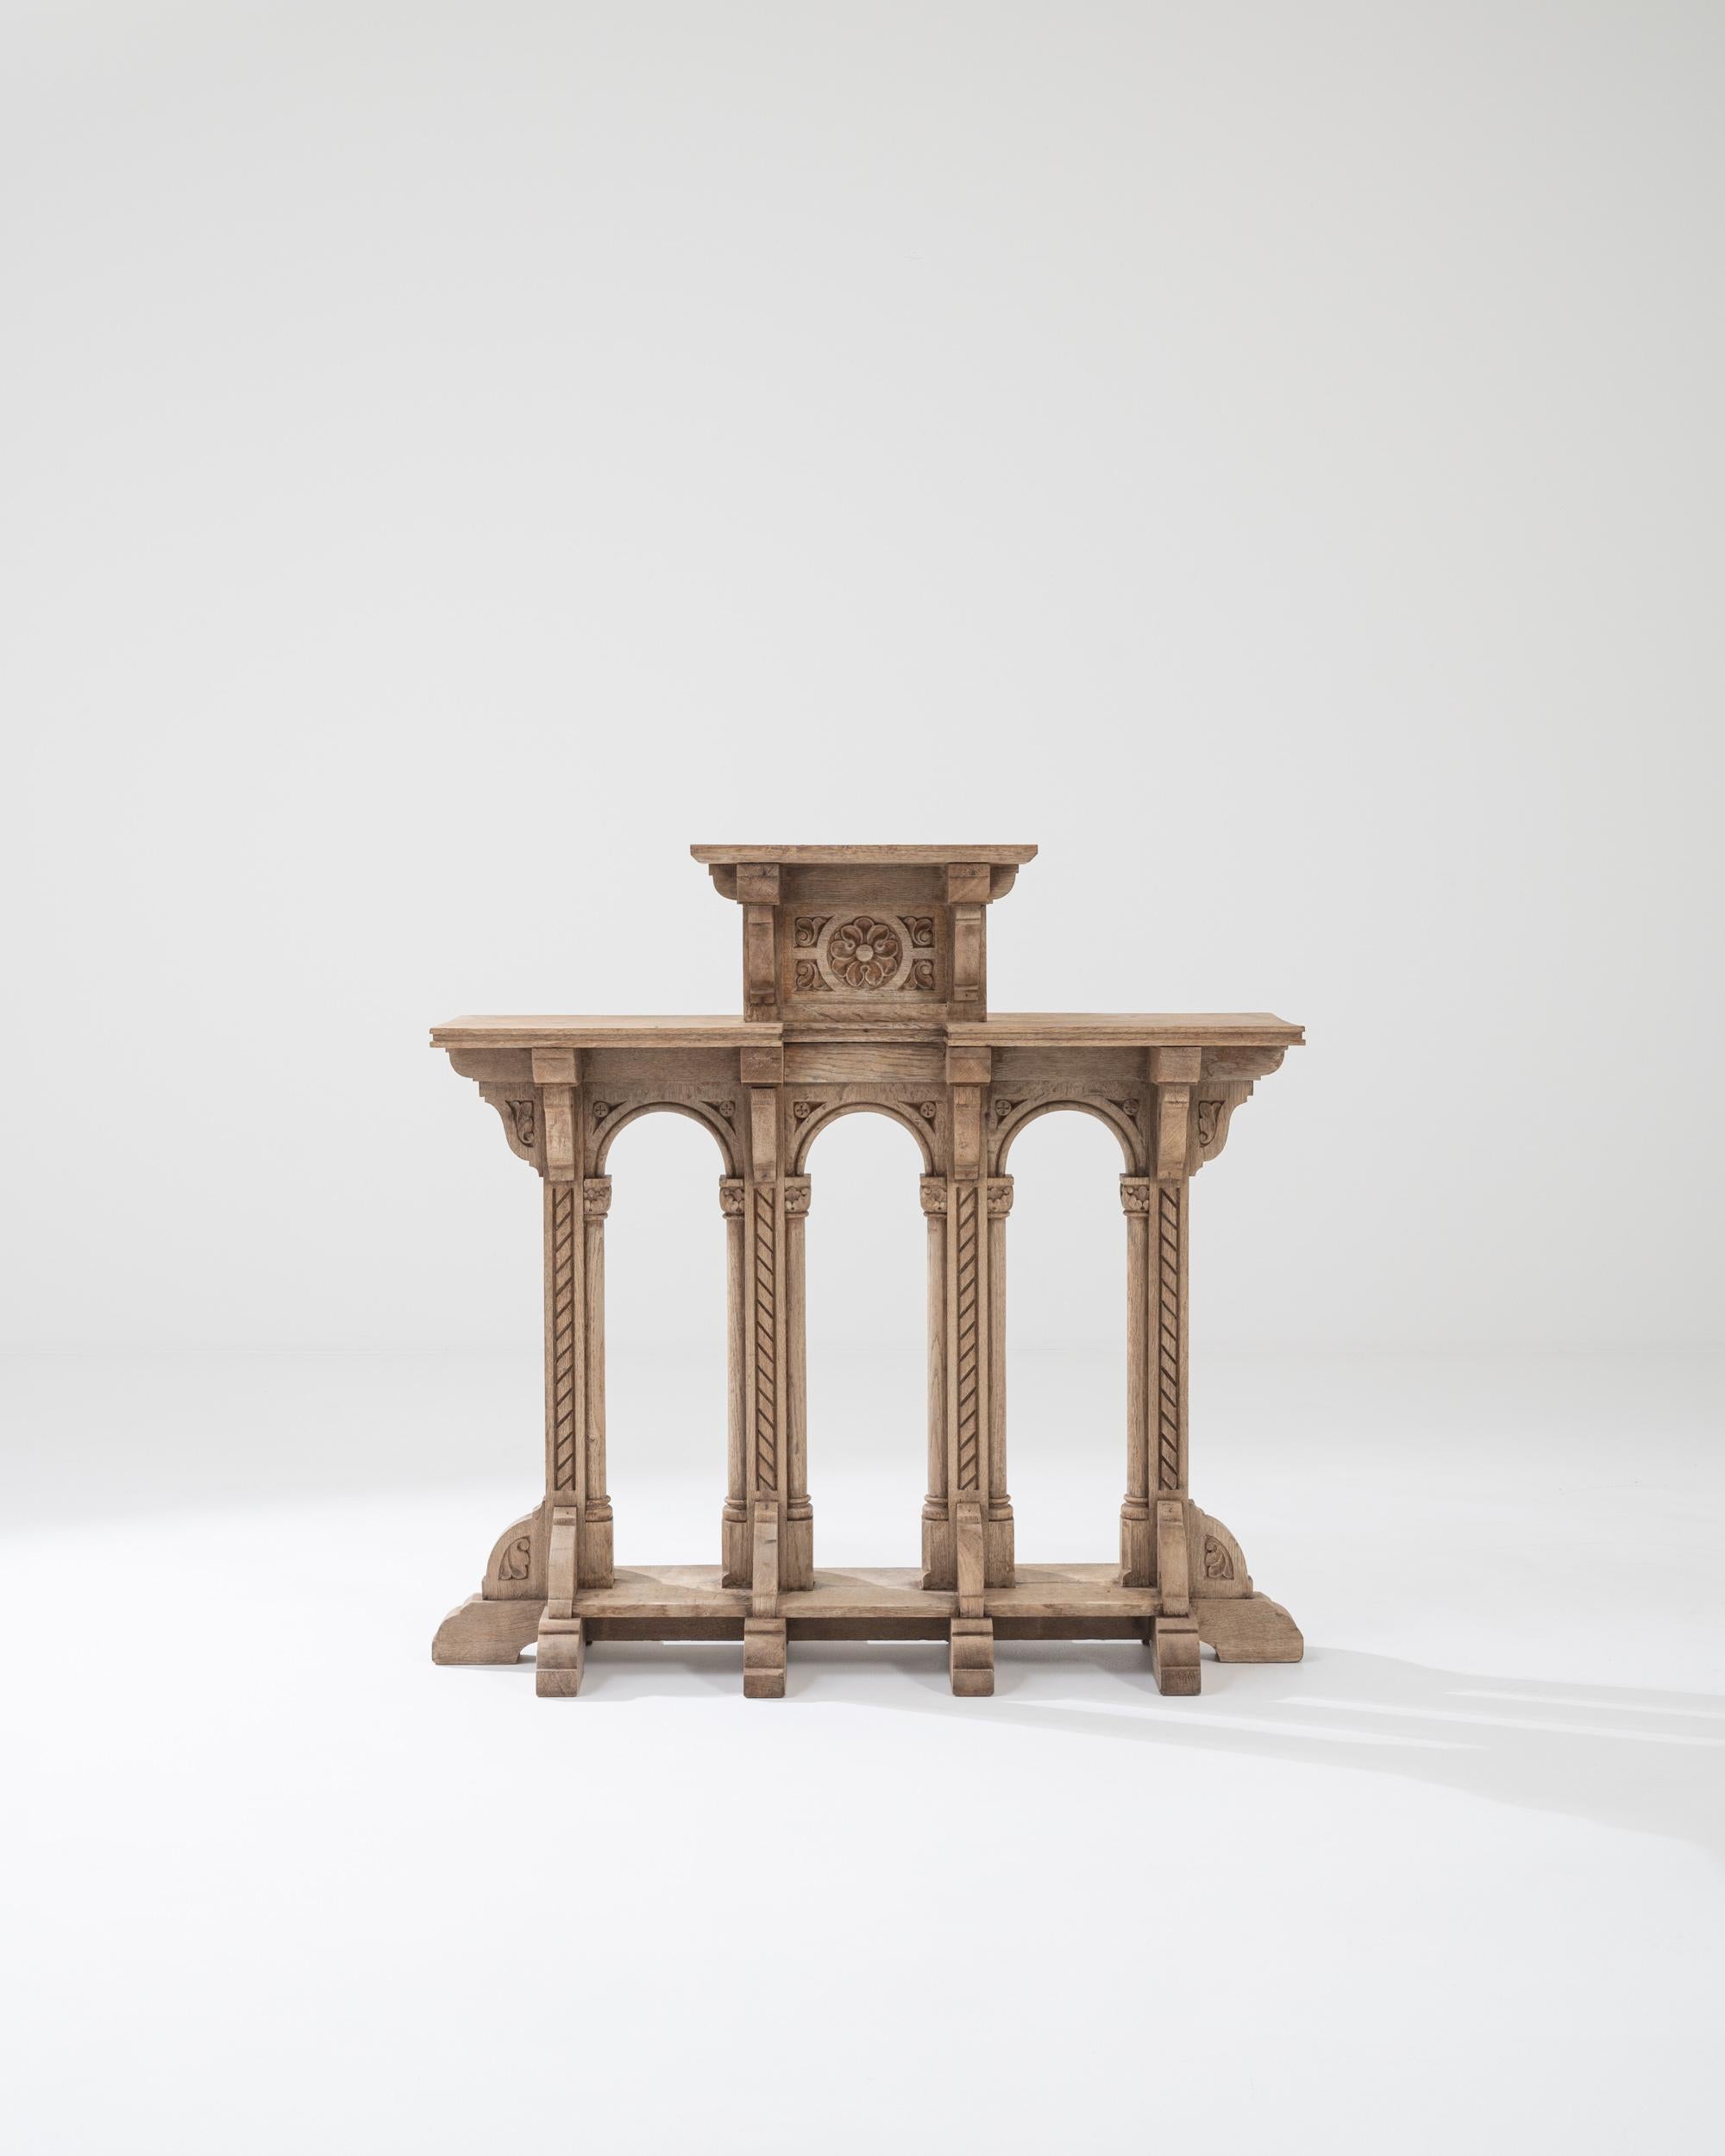 Dieser Sockel aus Eichenholz aus der Jahrhundertwende, der in Frankreich hergestellt wurde, ist mit seinen vier Säulen ein kunstvolles Element. Dieses aufwändig von Hand geschnitzte, korinthisch inspirierte Stück verfügt über drei obere